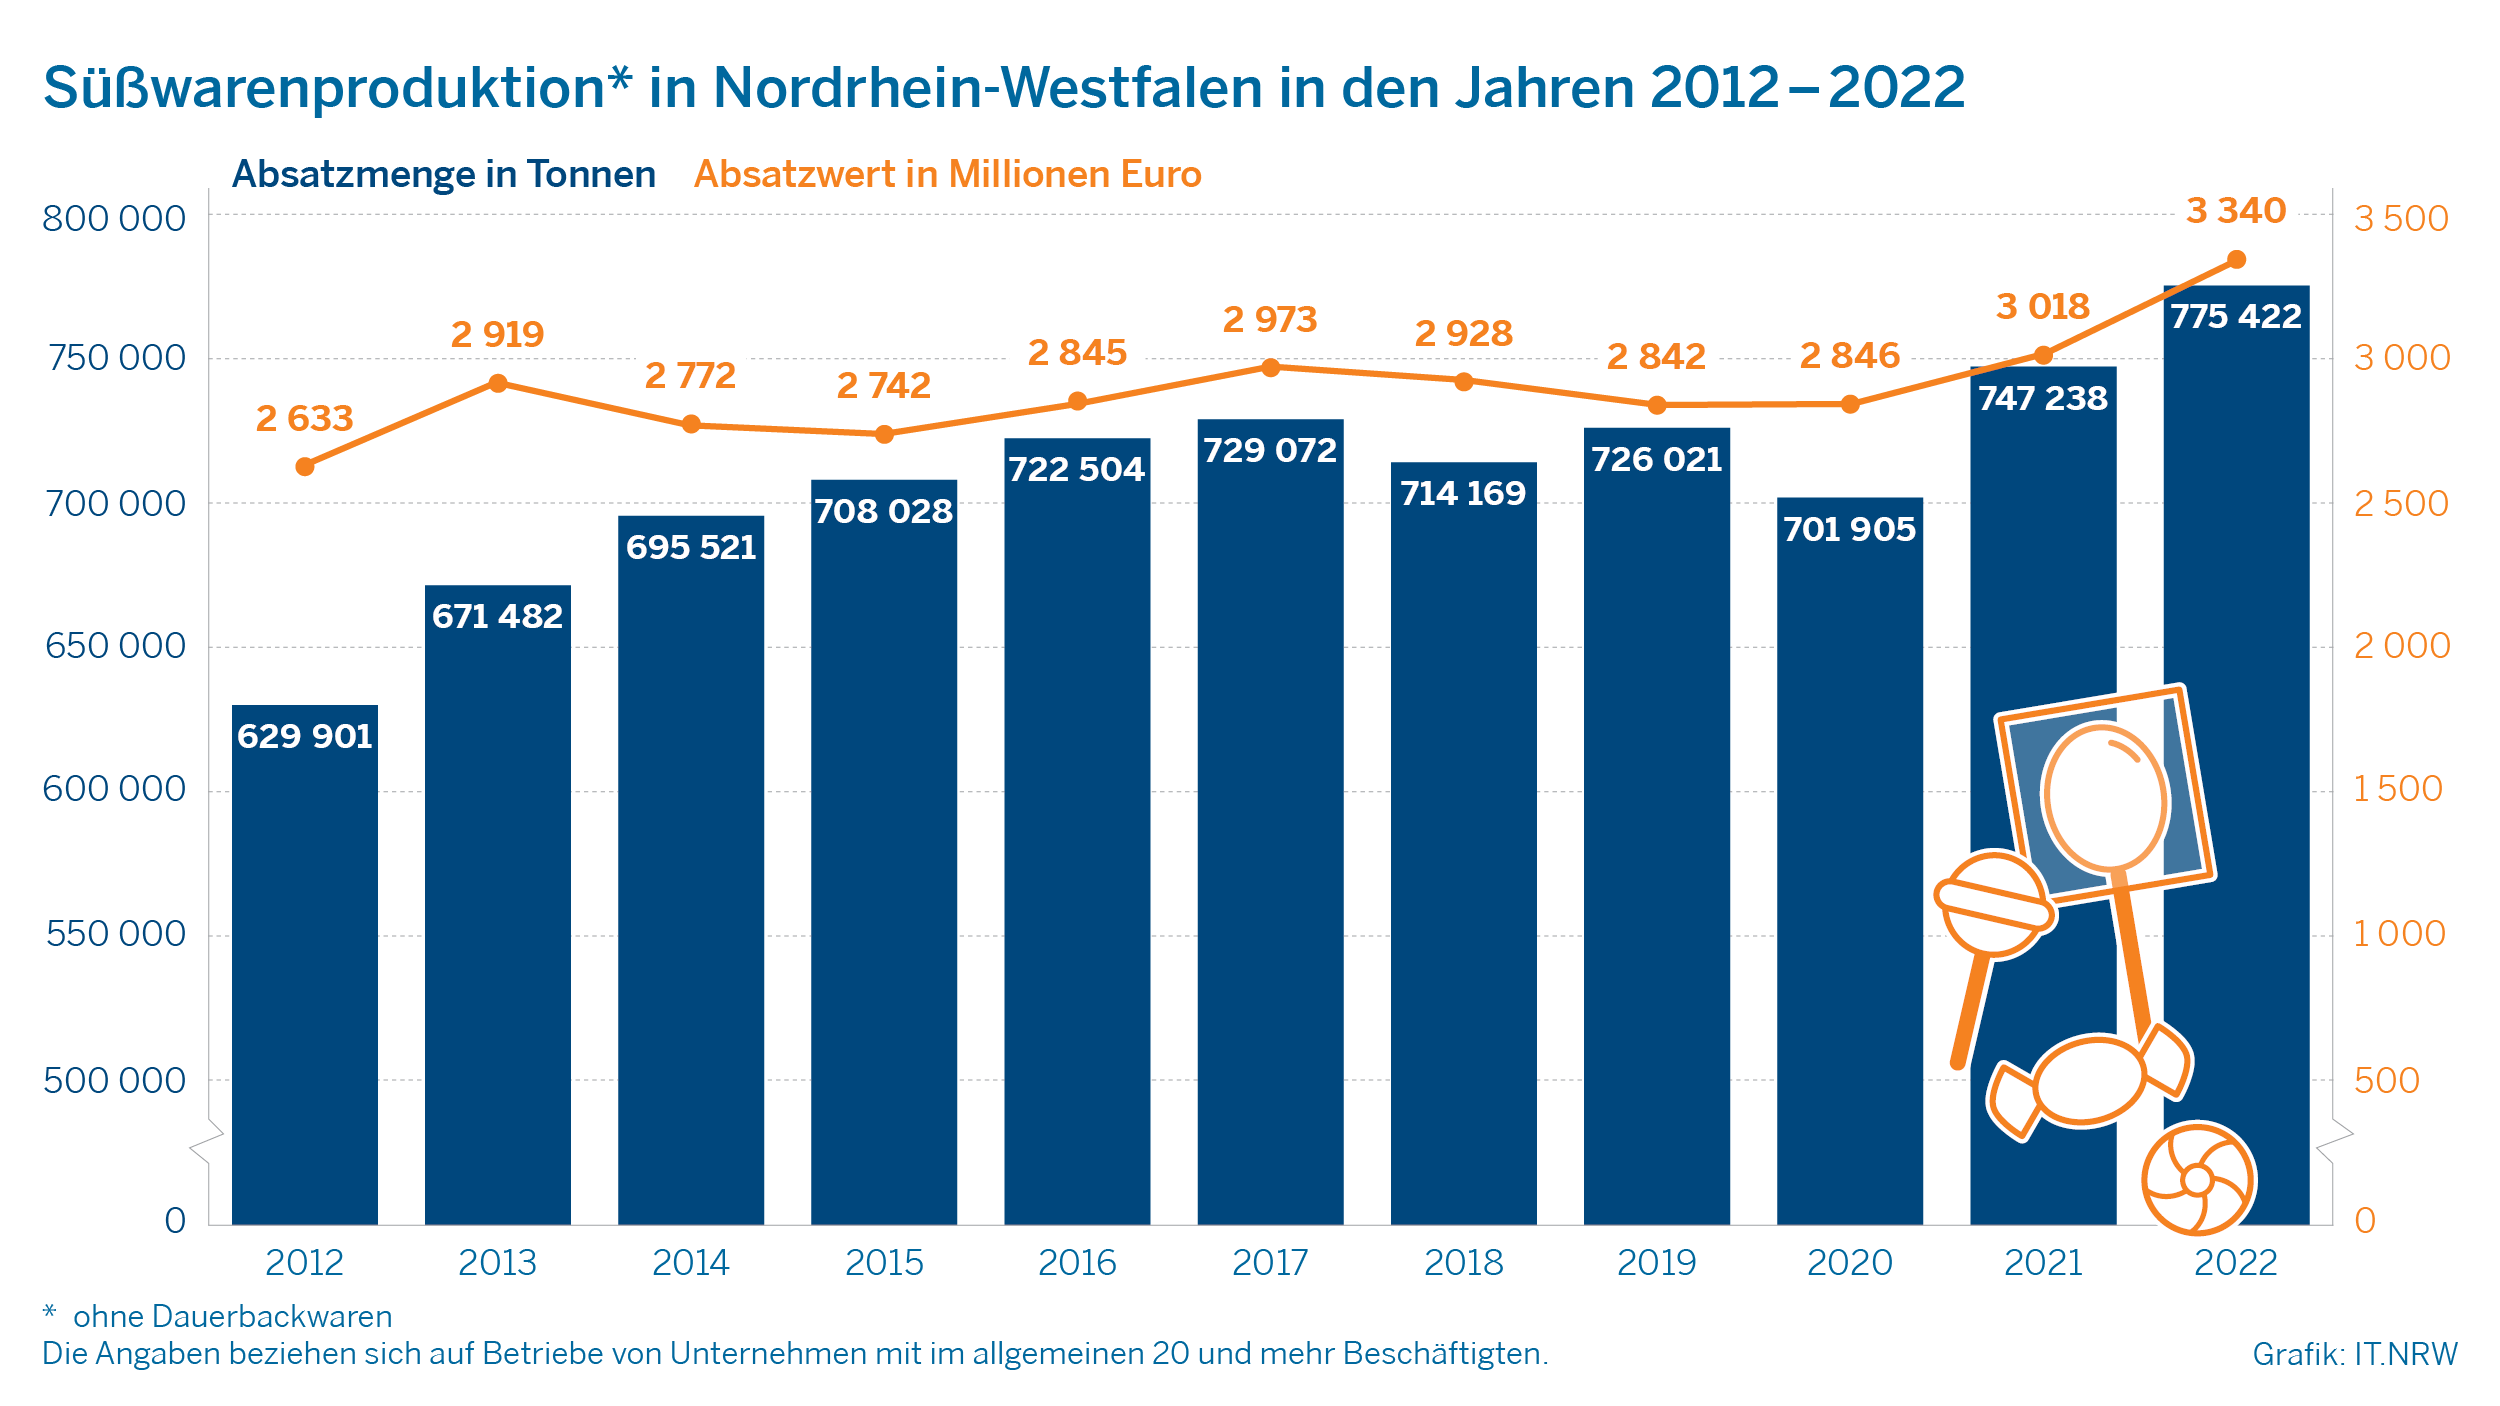 Süßwarenproduktion in Nordrhein-Westfalen in den Jahren 2012-2022